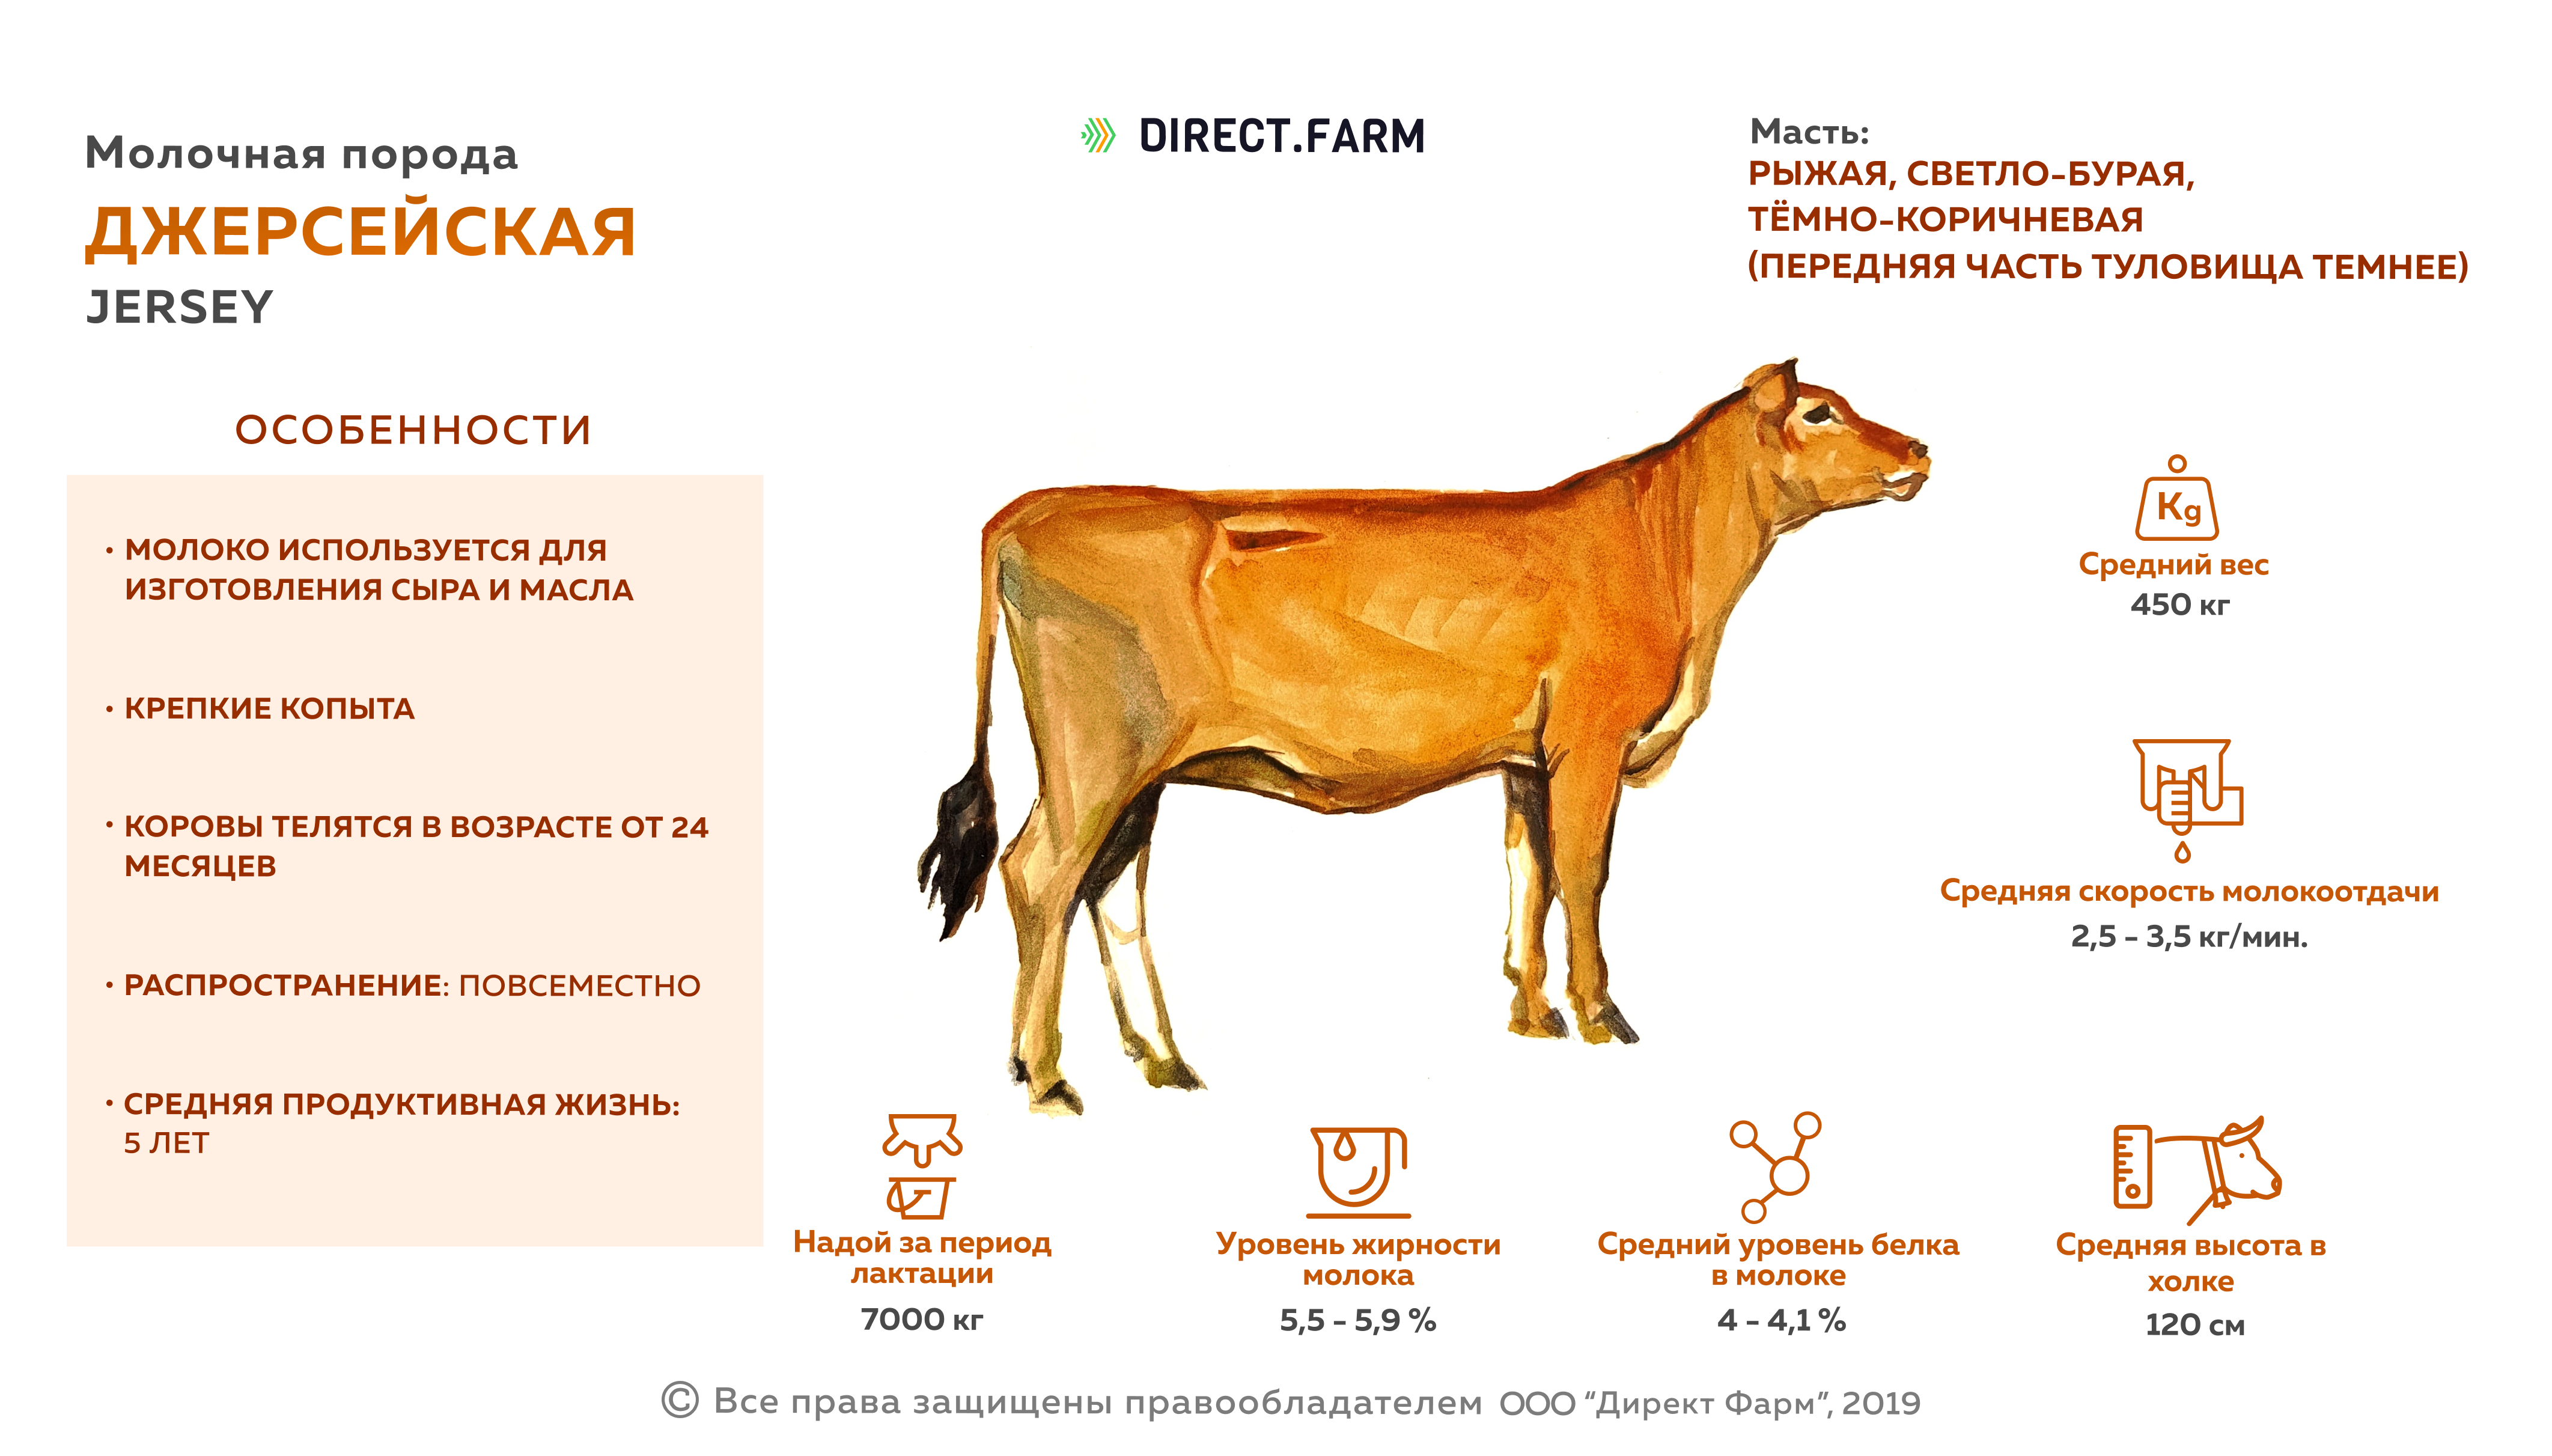 Джерсейская порода коров: фото, характеристики и отзывы о ней